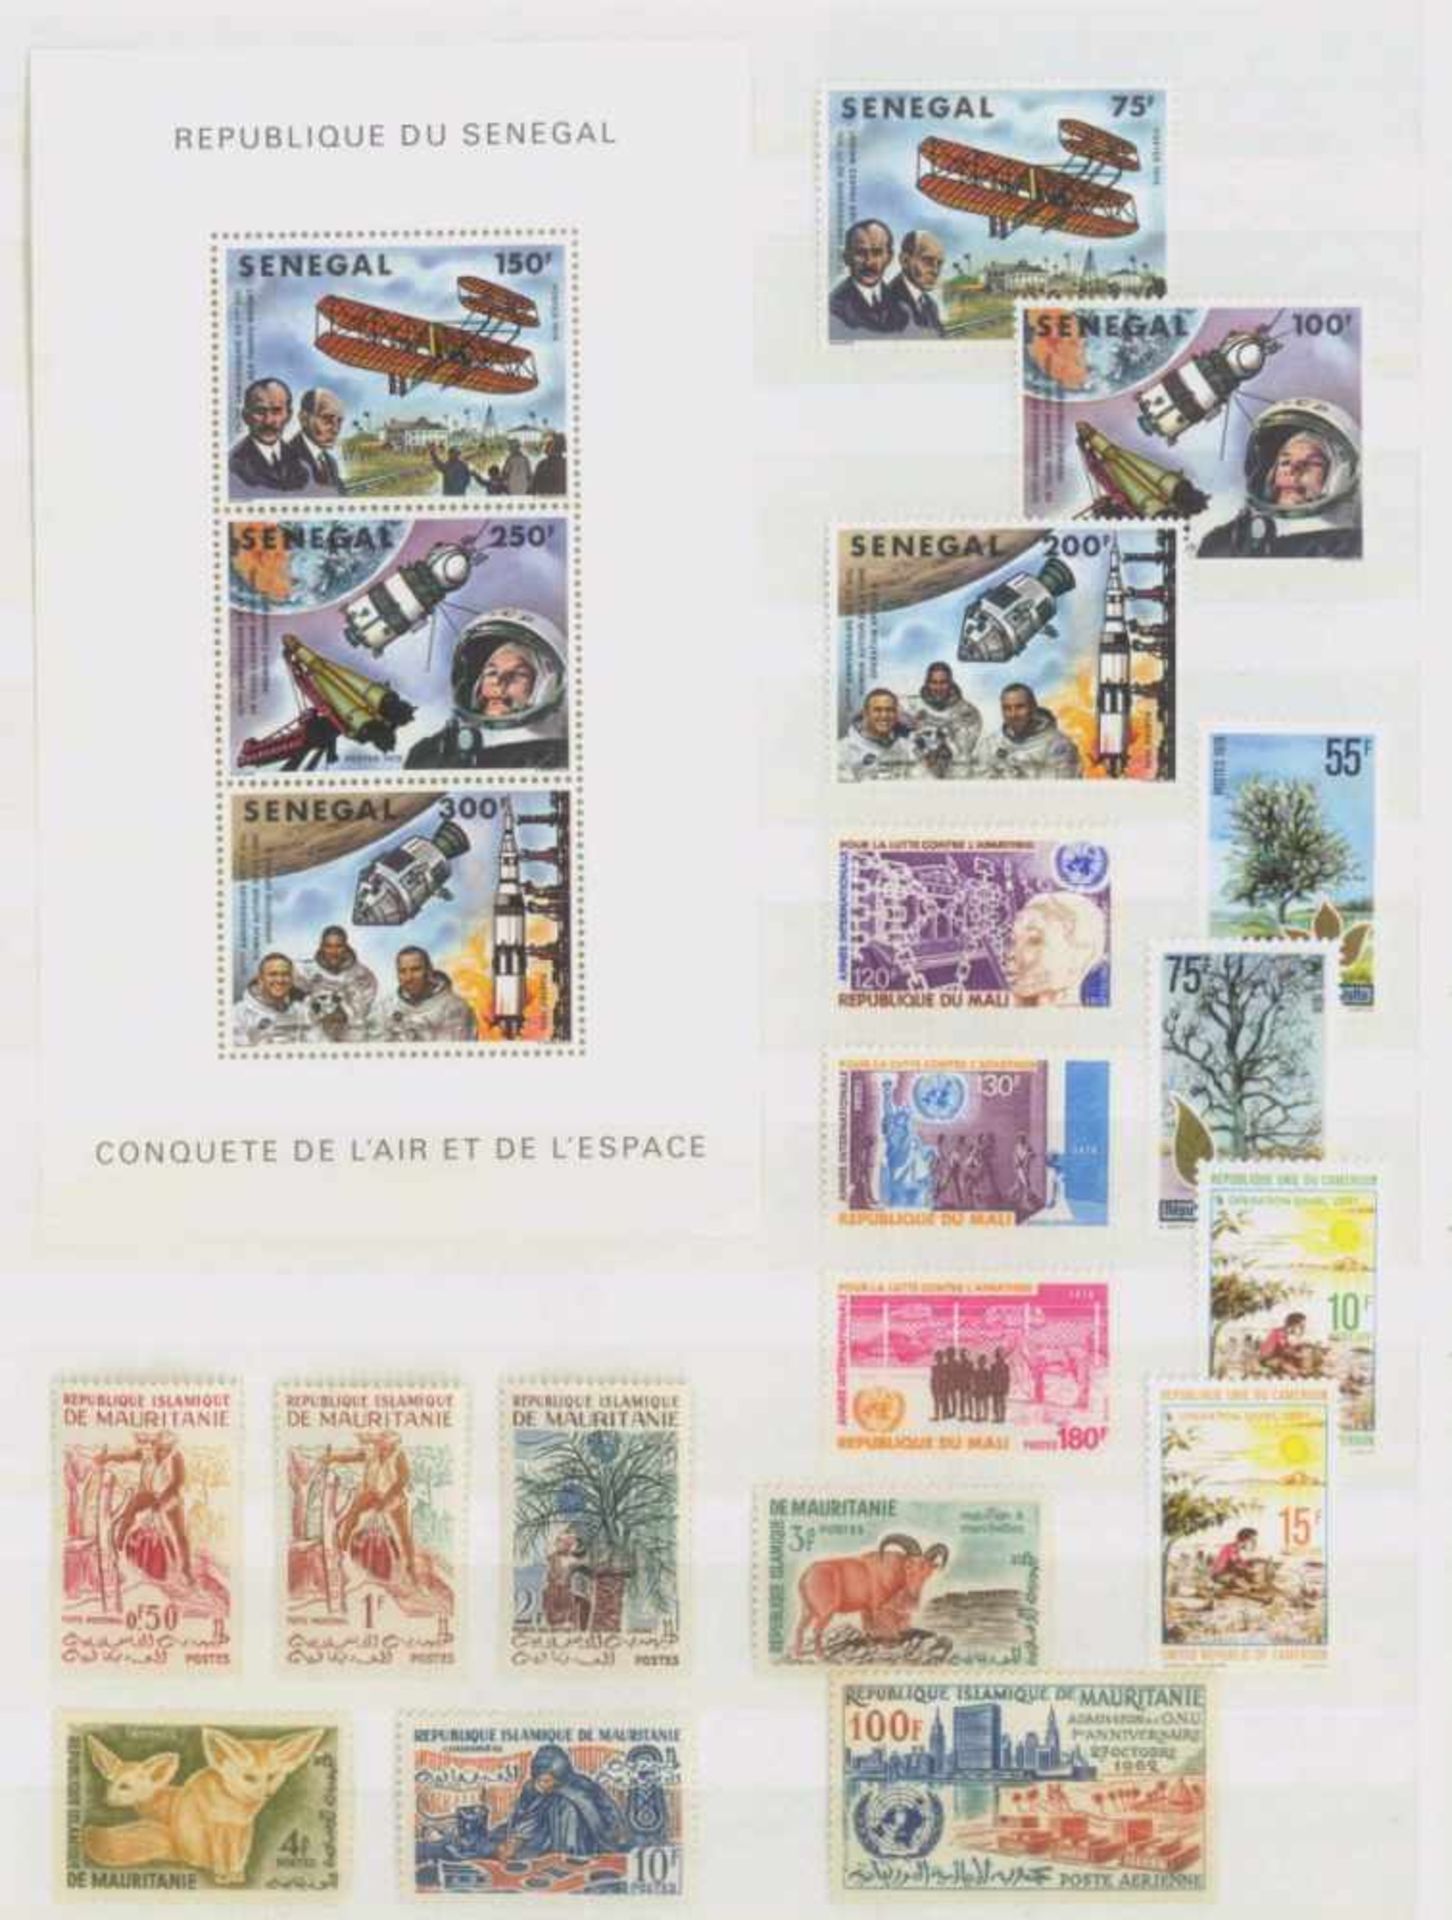 WESTAFRIKA, postfrische Sammlung, MOTIVE!!!!postfrische Sammlungen Elfenbeinküste, Mali, Senegal, - Bild 2 aus 3